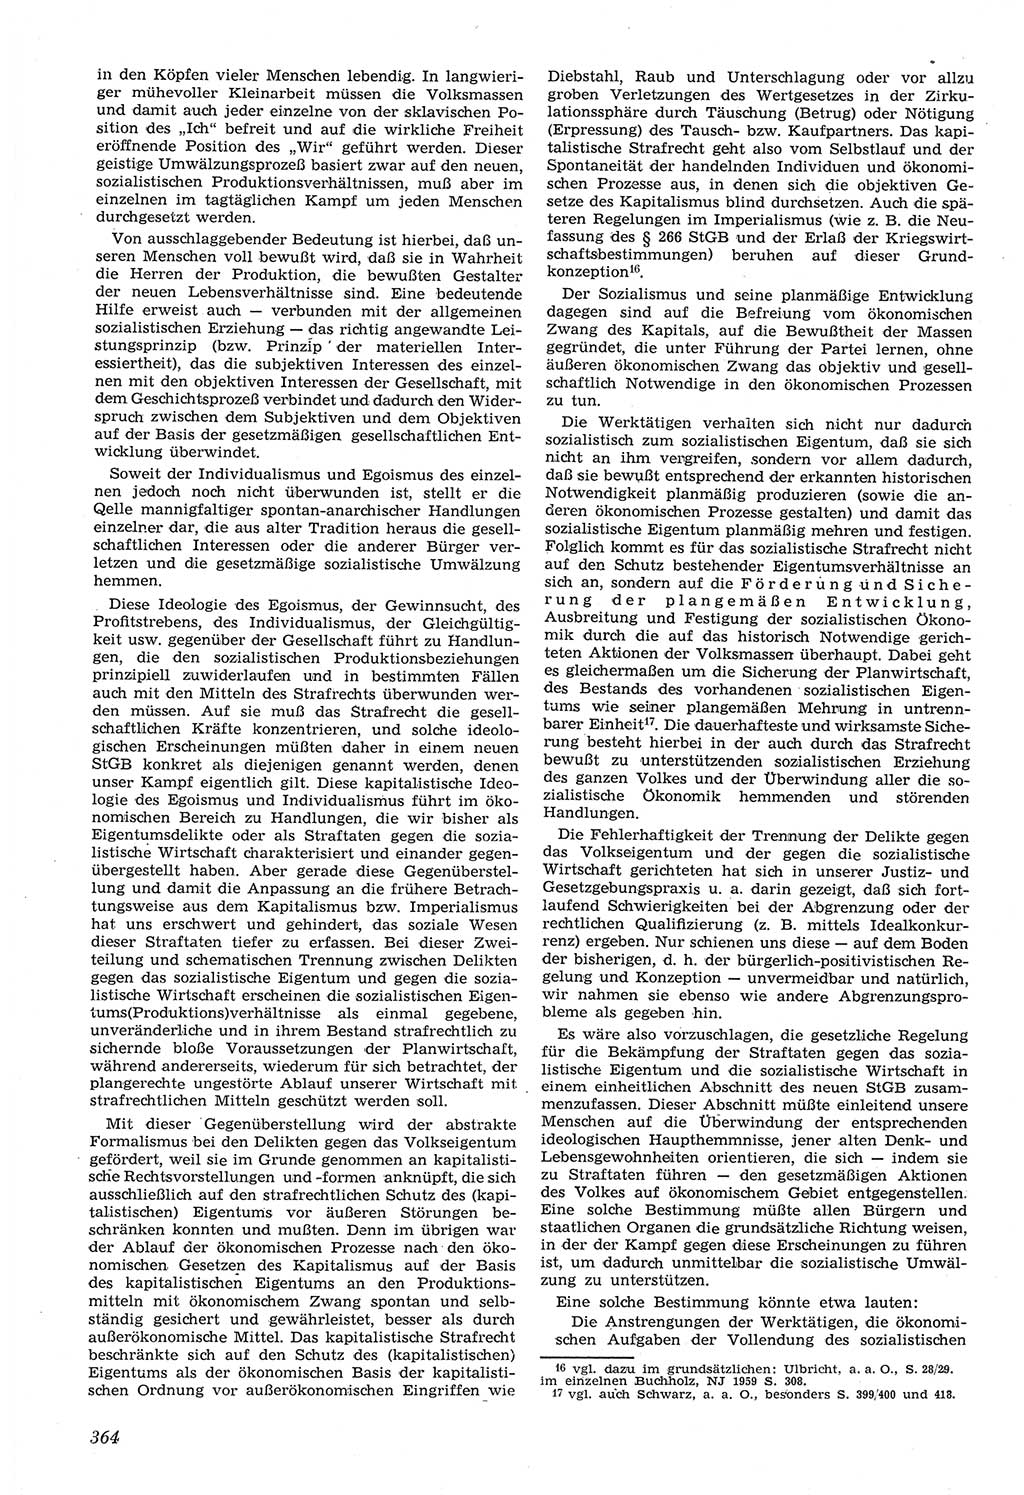 Neue Justiz (NJ), Zeitschrift für Recht und Rechtswissenschaft [Deutsche Demokratische Republik (DDR)], 14. Jahrgang 1960, Seite 364 (NJ DDR 1960, S. 364)